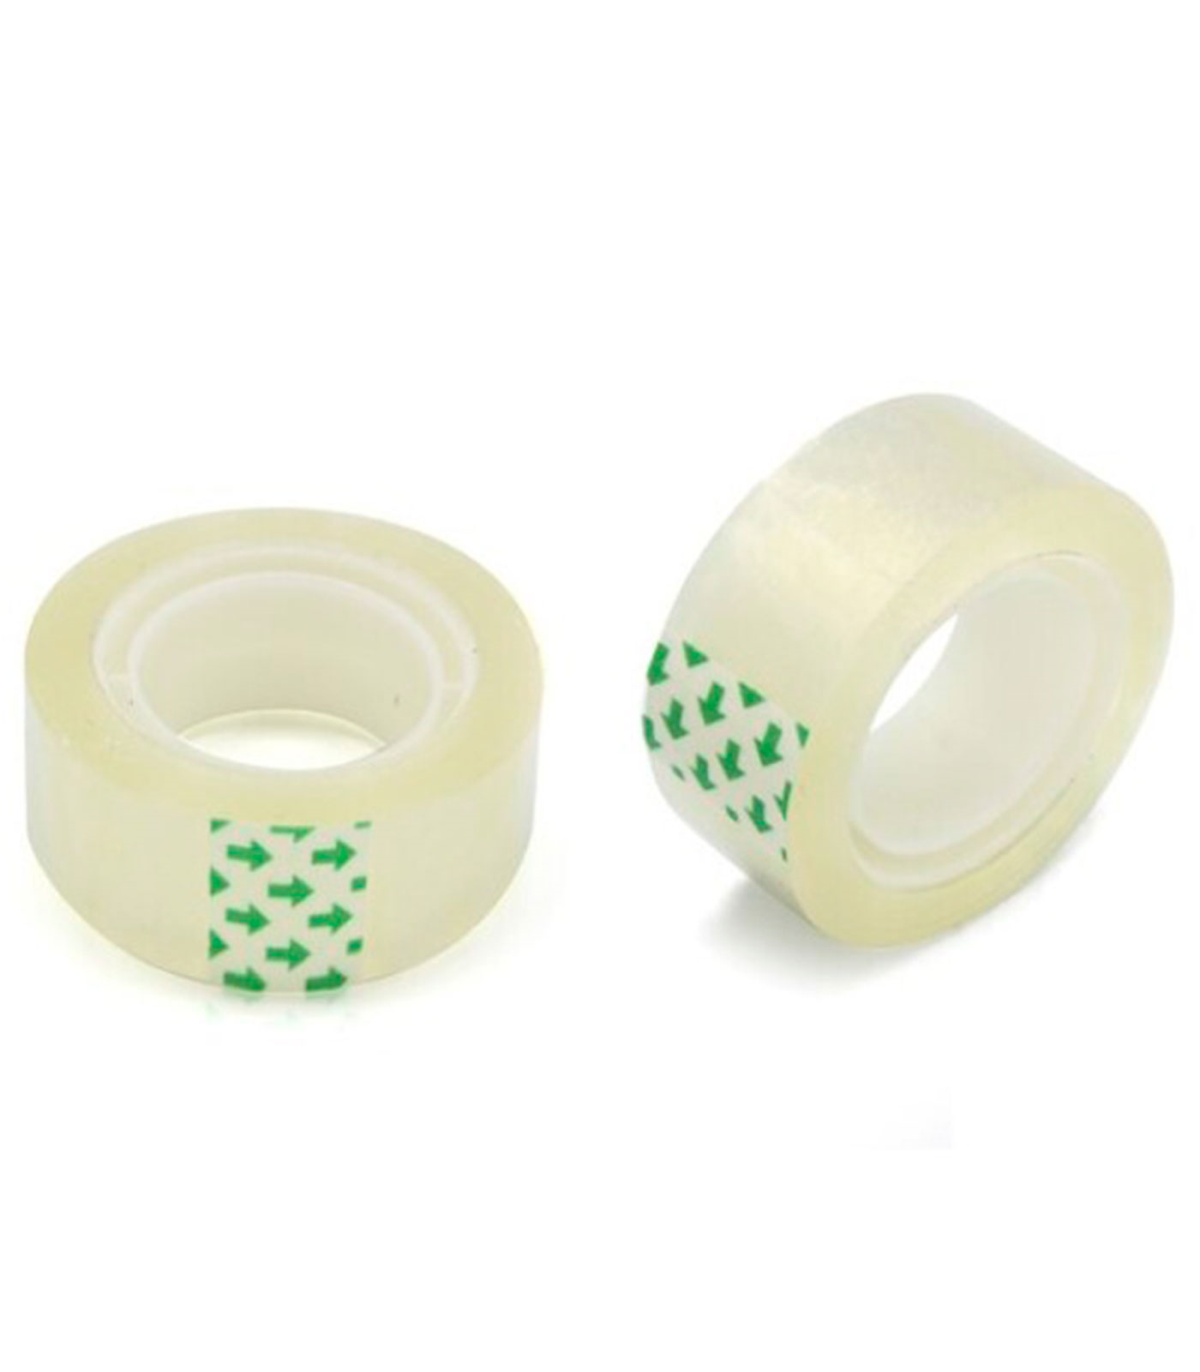 Tradineur - Pack de 2 rollos de celo, cinta adhesiva transparente,  reparación, sellado, uso general en oficina, colegio, hogar